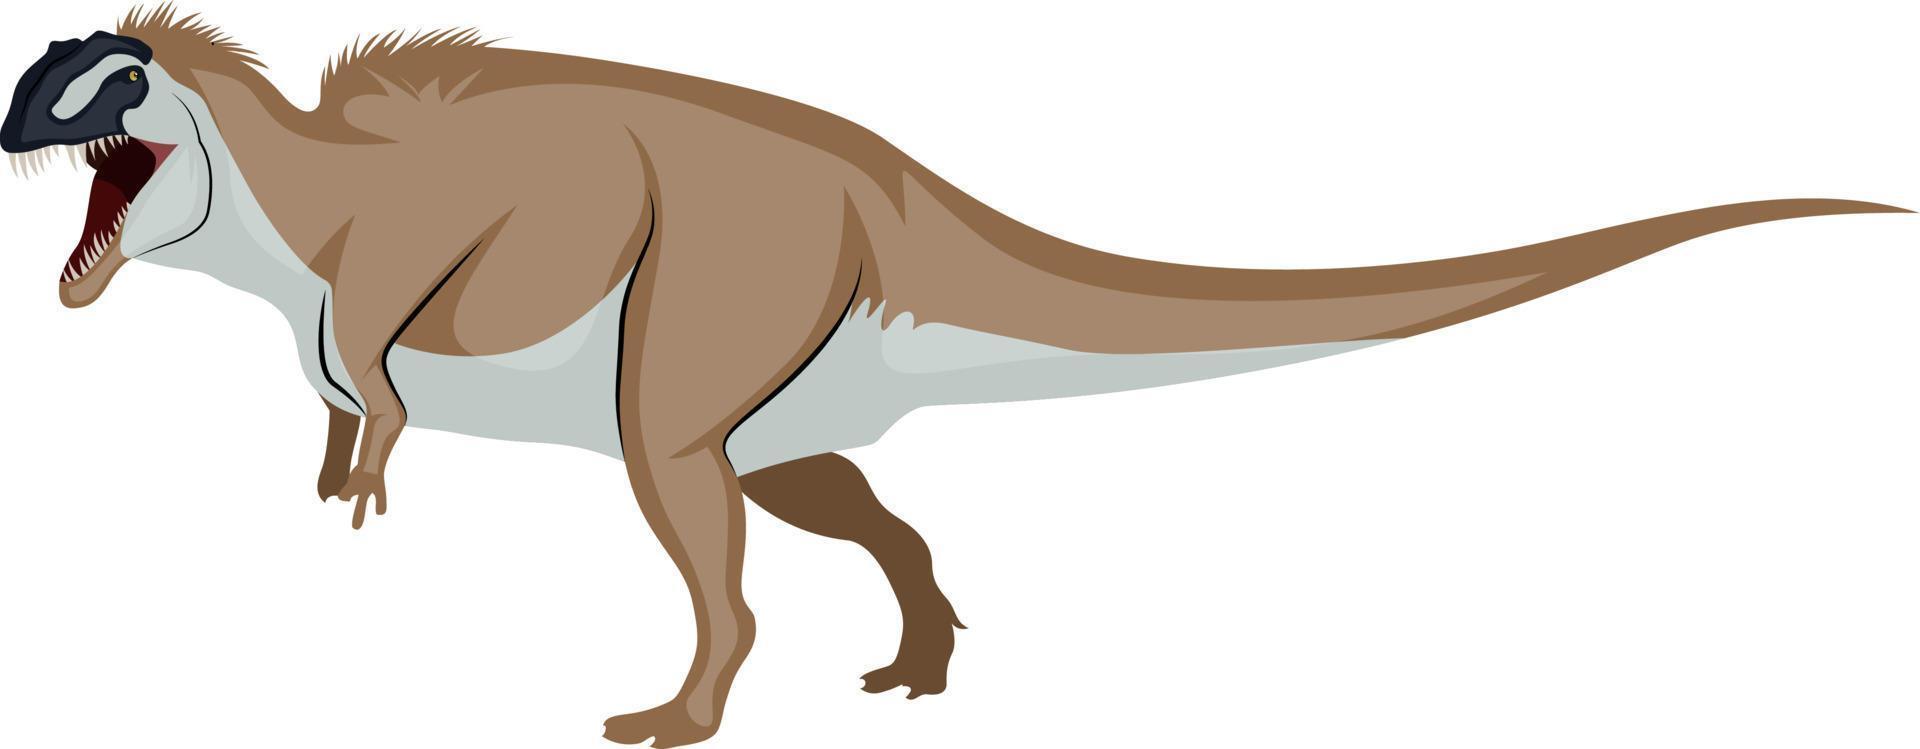 ocantosaurio, ilustración, vector sobre fondo blanco.